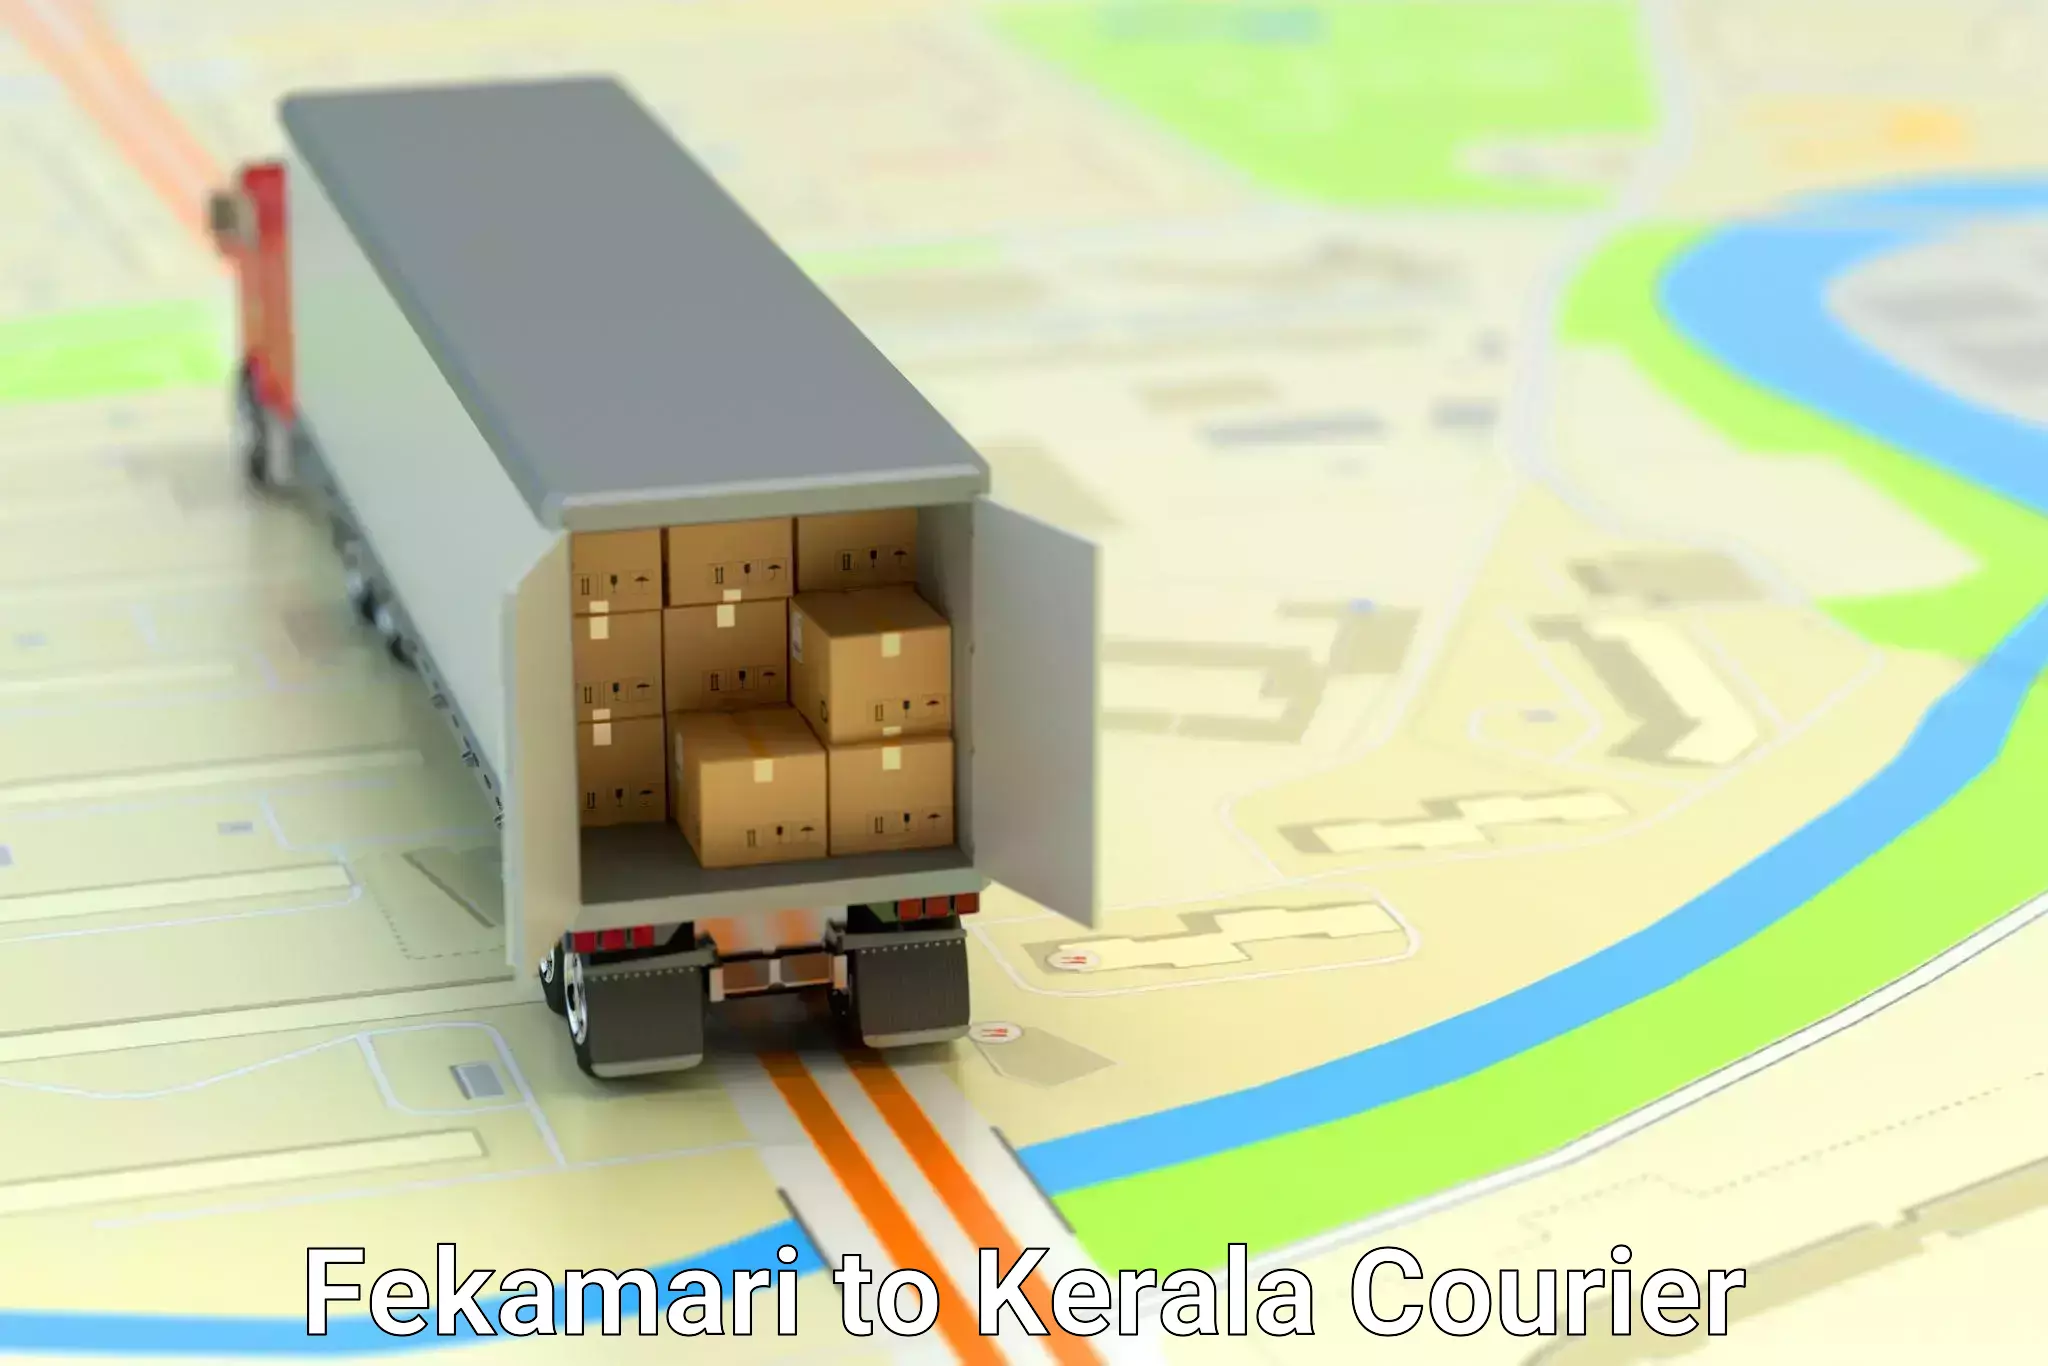 Parcel handling and care Fekamari to Kerala